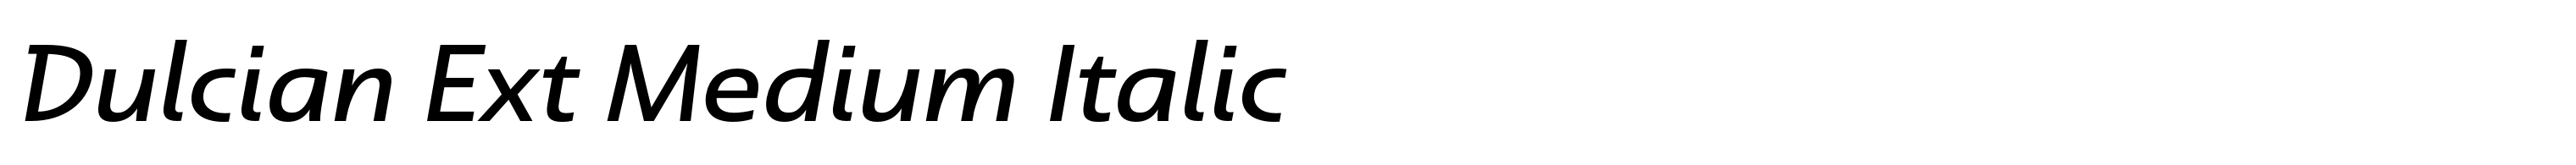 Dulcian Ext Medium Italic